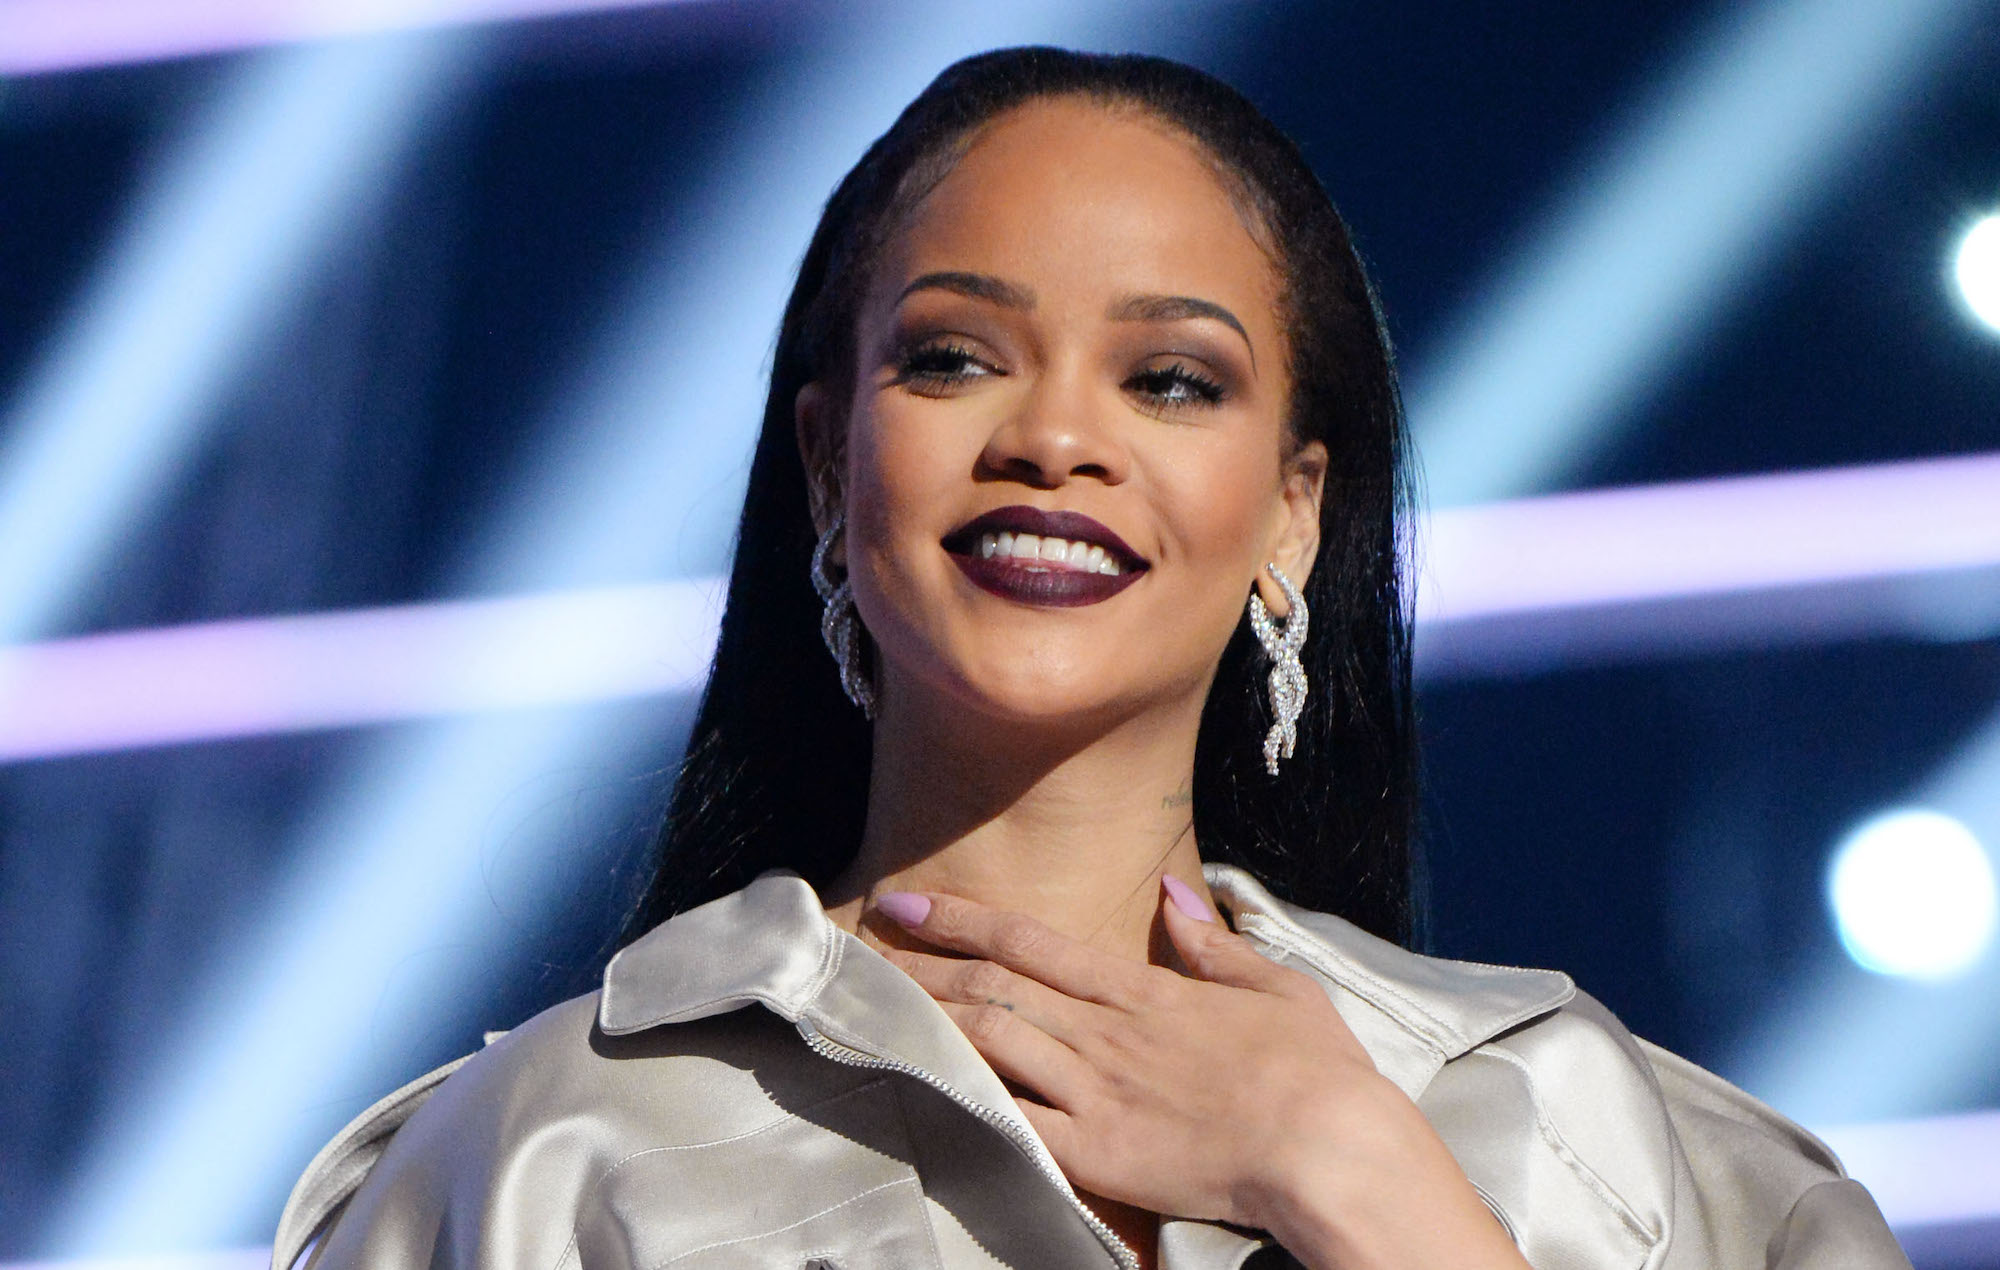 La policía fue llamada a la casa de Rihanna en Los Ángeles tras recibir informes de un intruso